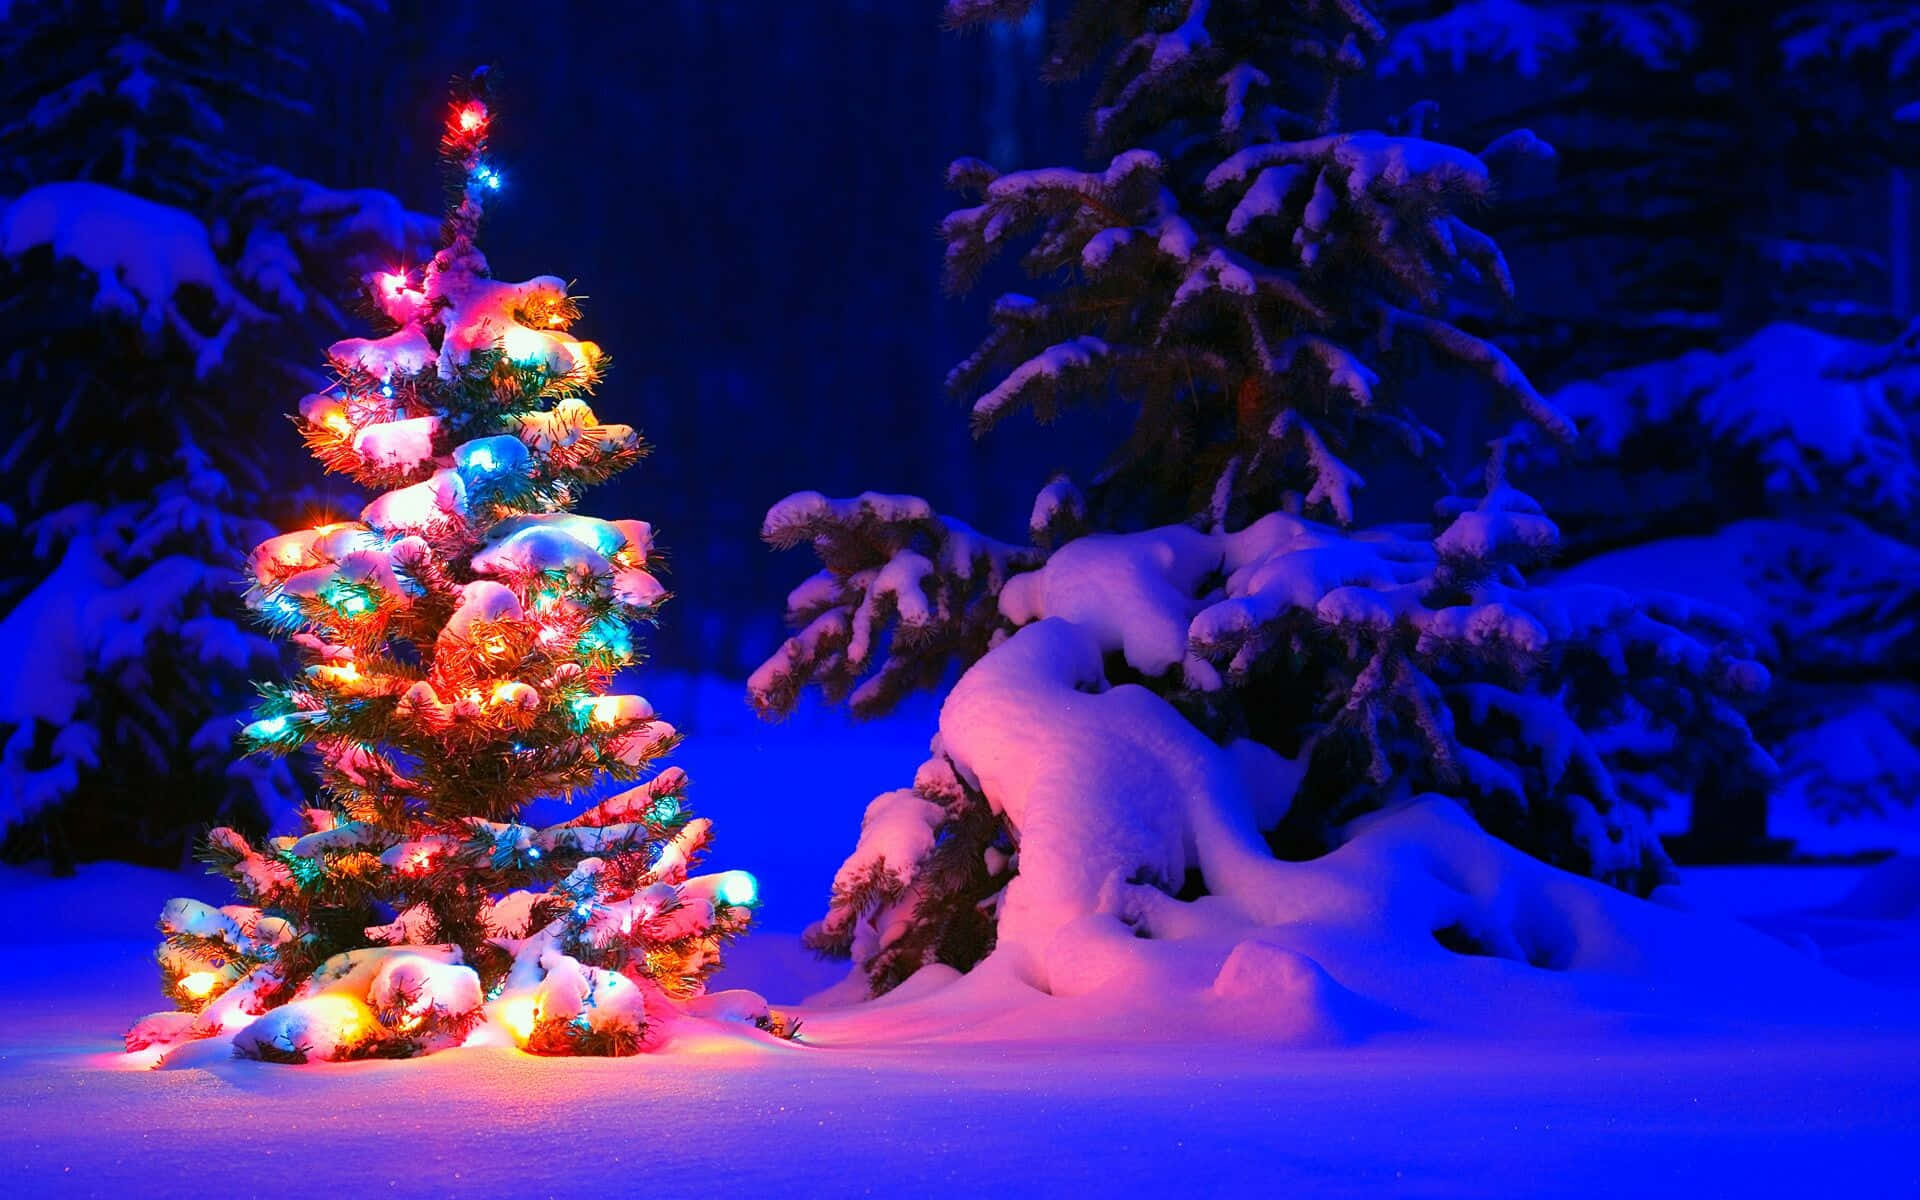 Fondode Pantalla De Alta Resolución De Un Árbol Iluminado En Navidad Para Escritorio. Fondo de pantalla